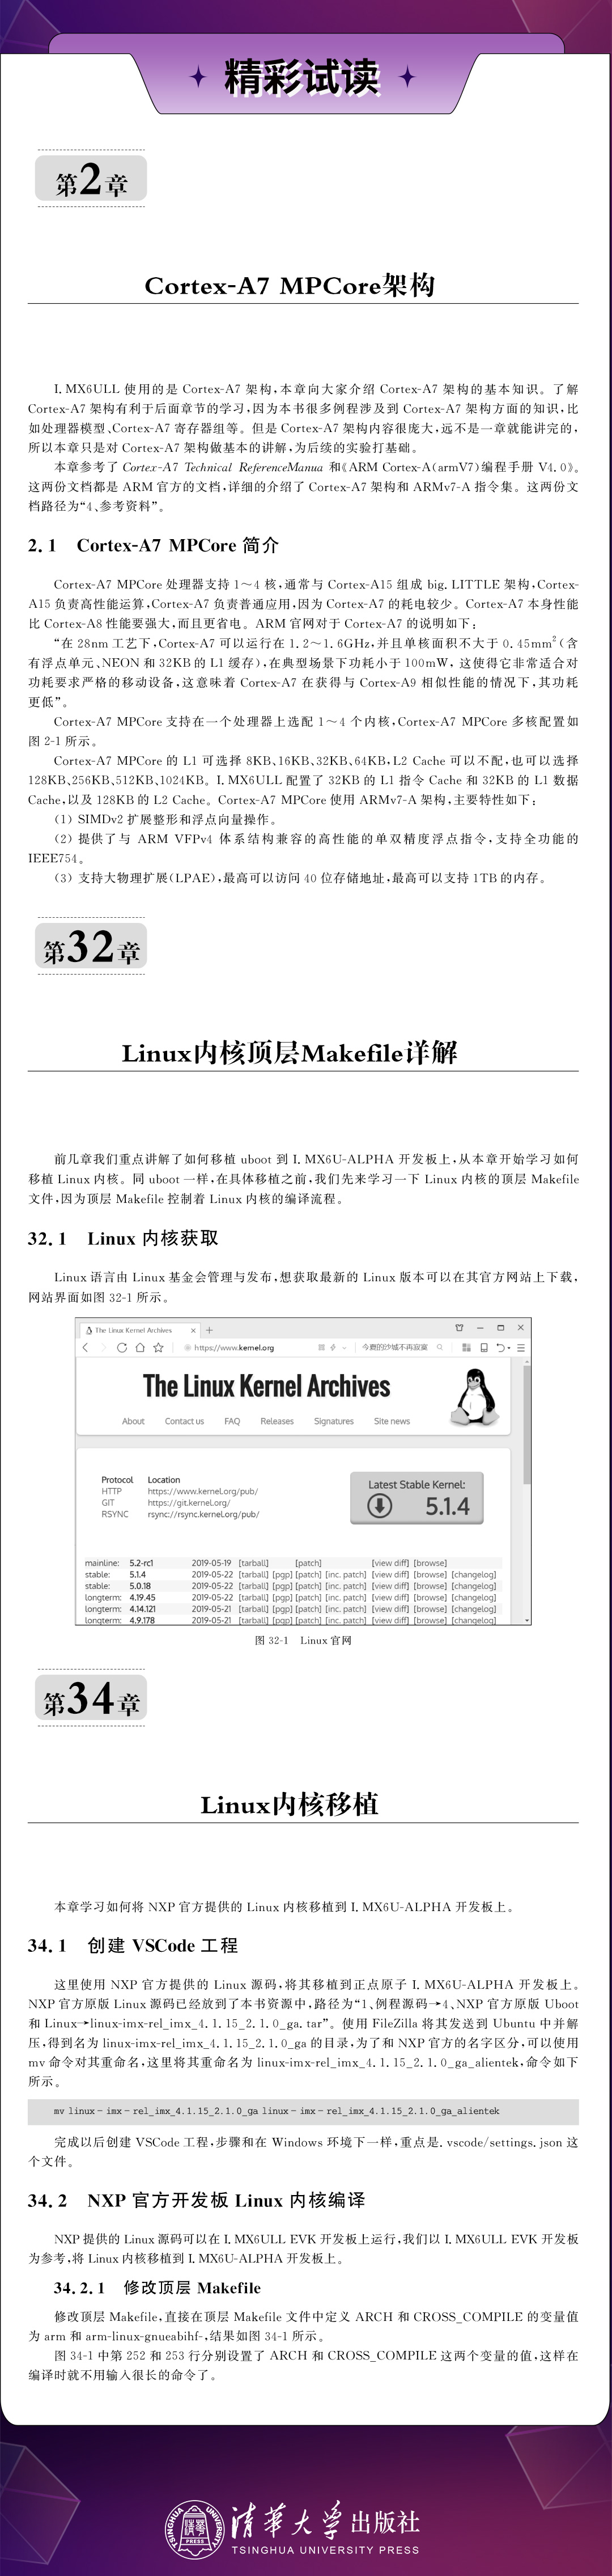 公众号头条-linux新书详情03.jpg